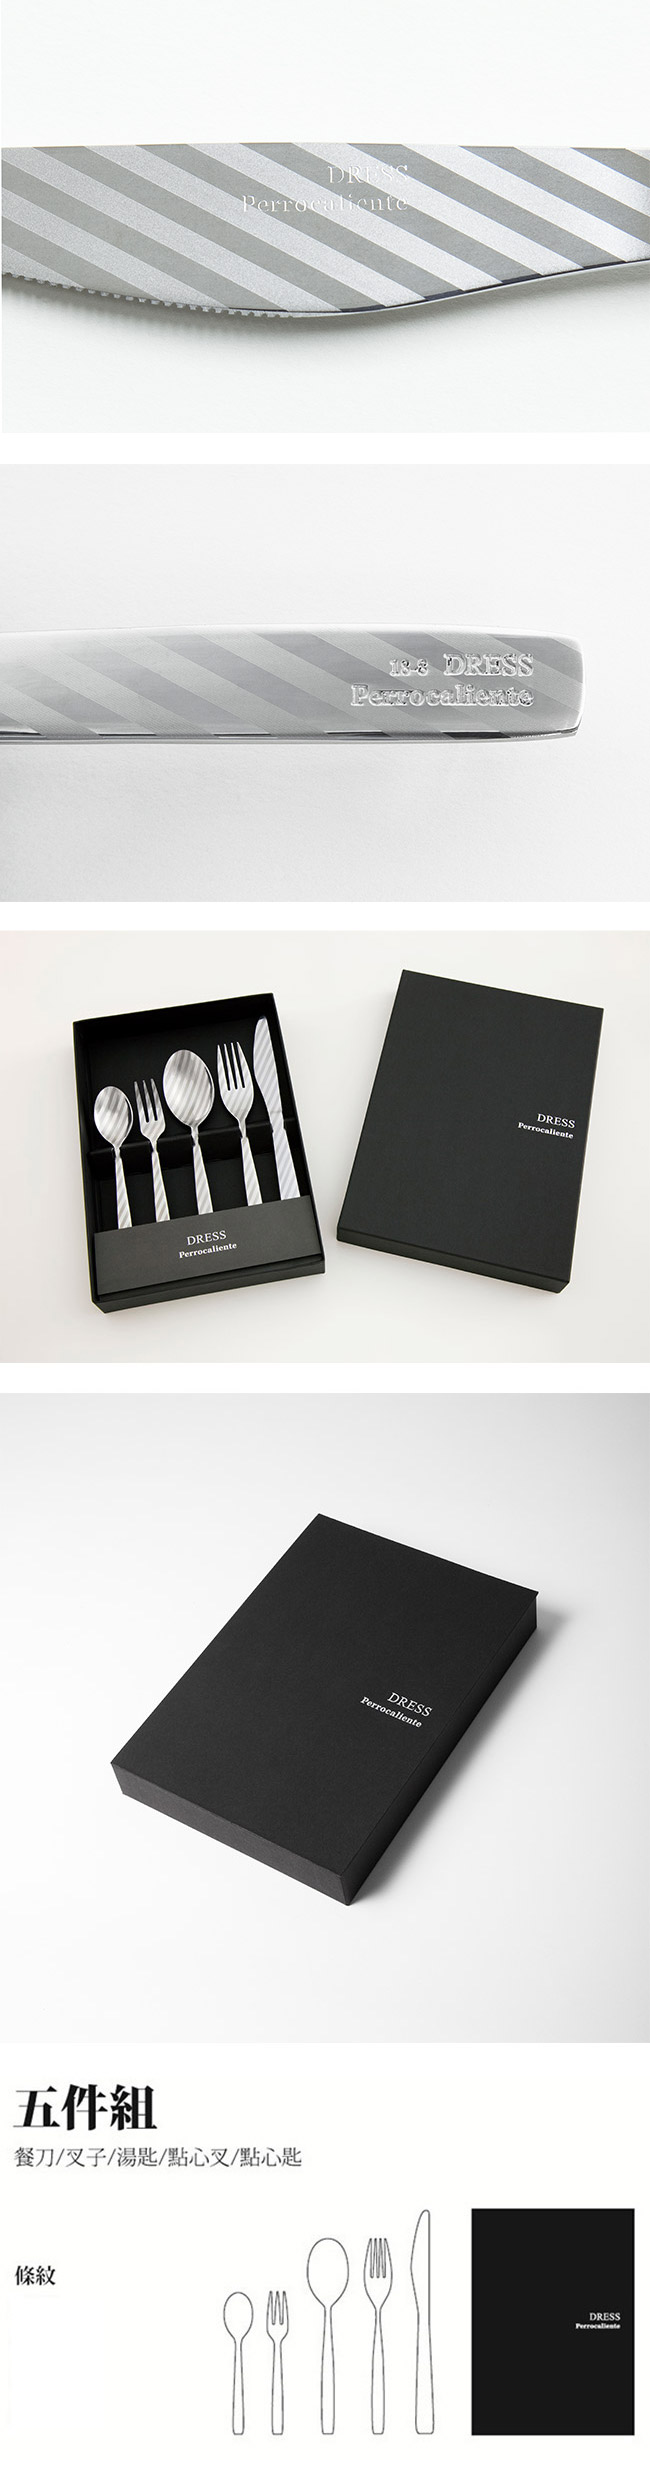 【4/16~4/22精選品牌9折優惠】日本 Perrocaliente Dress Gift Set 銀色盒裝餐具組 五件組 條紋